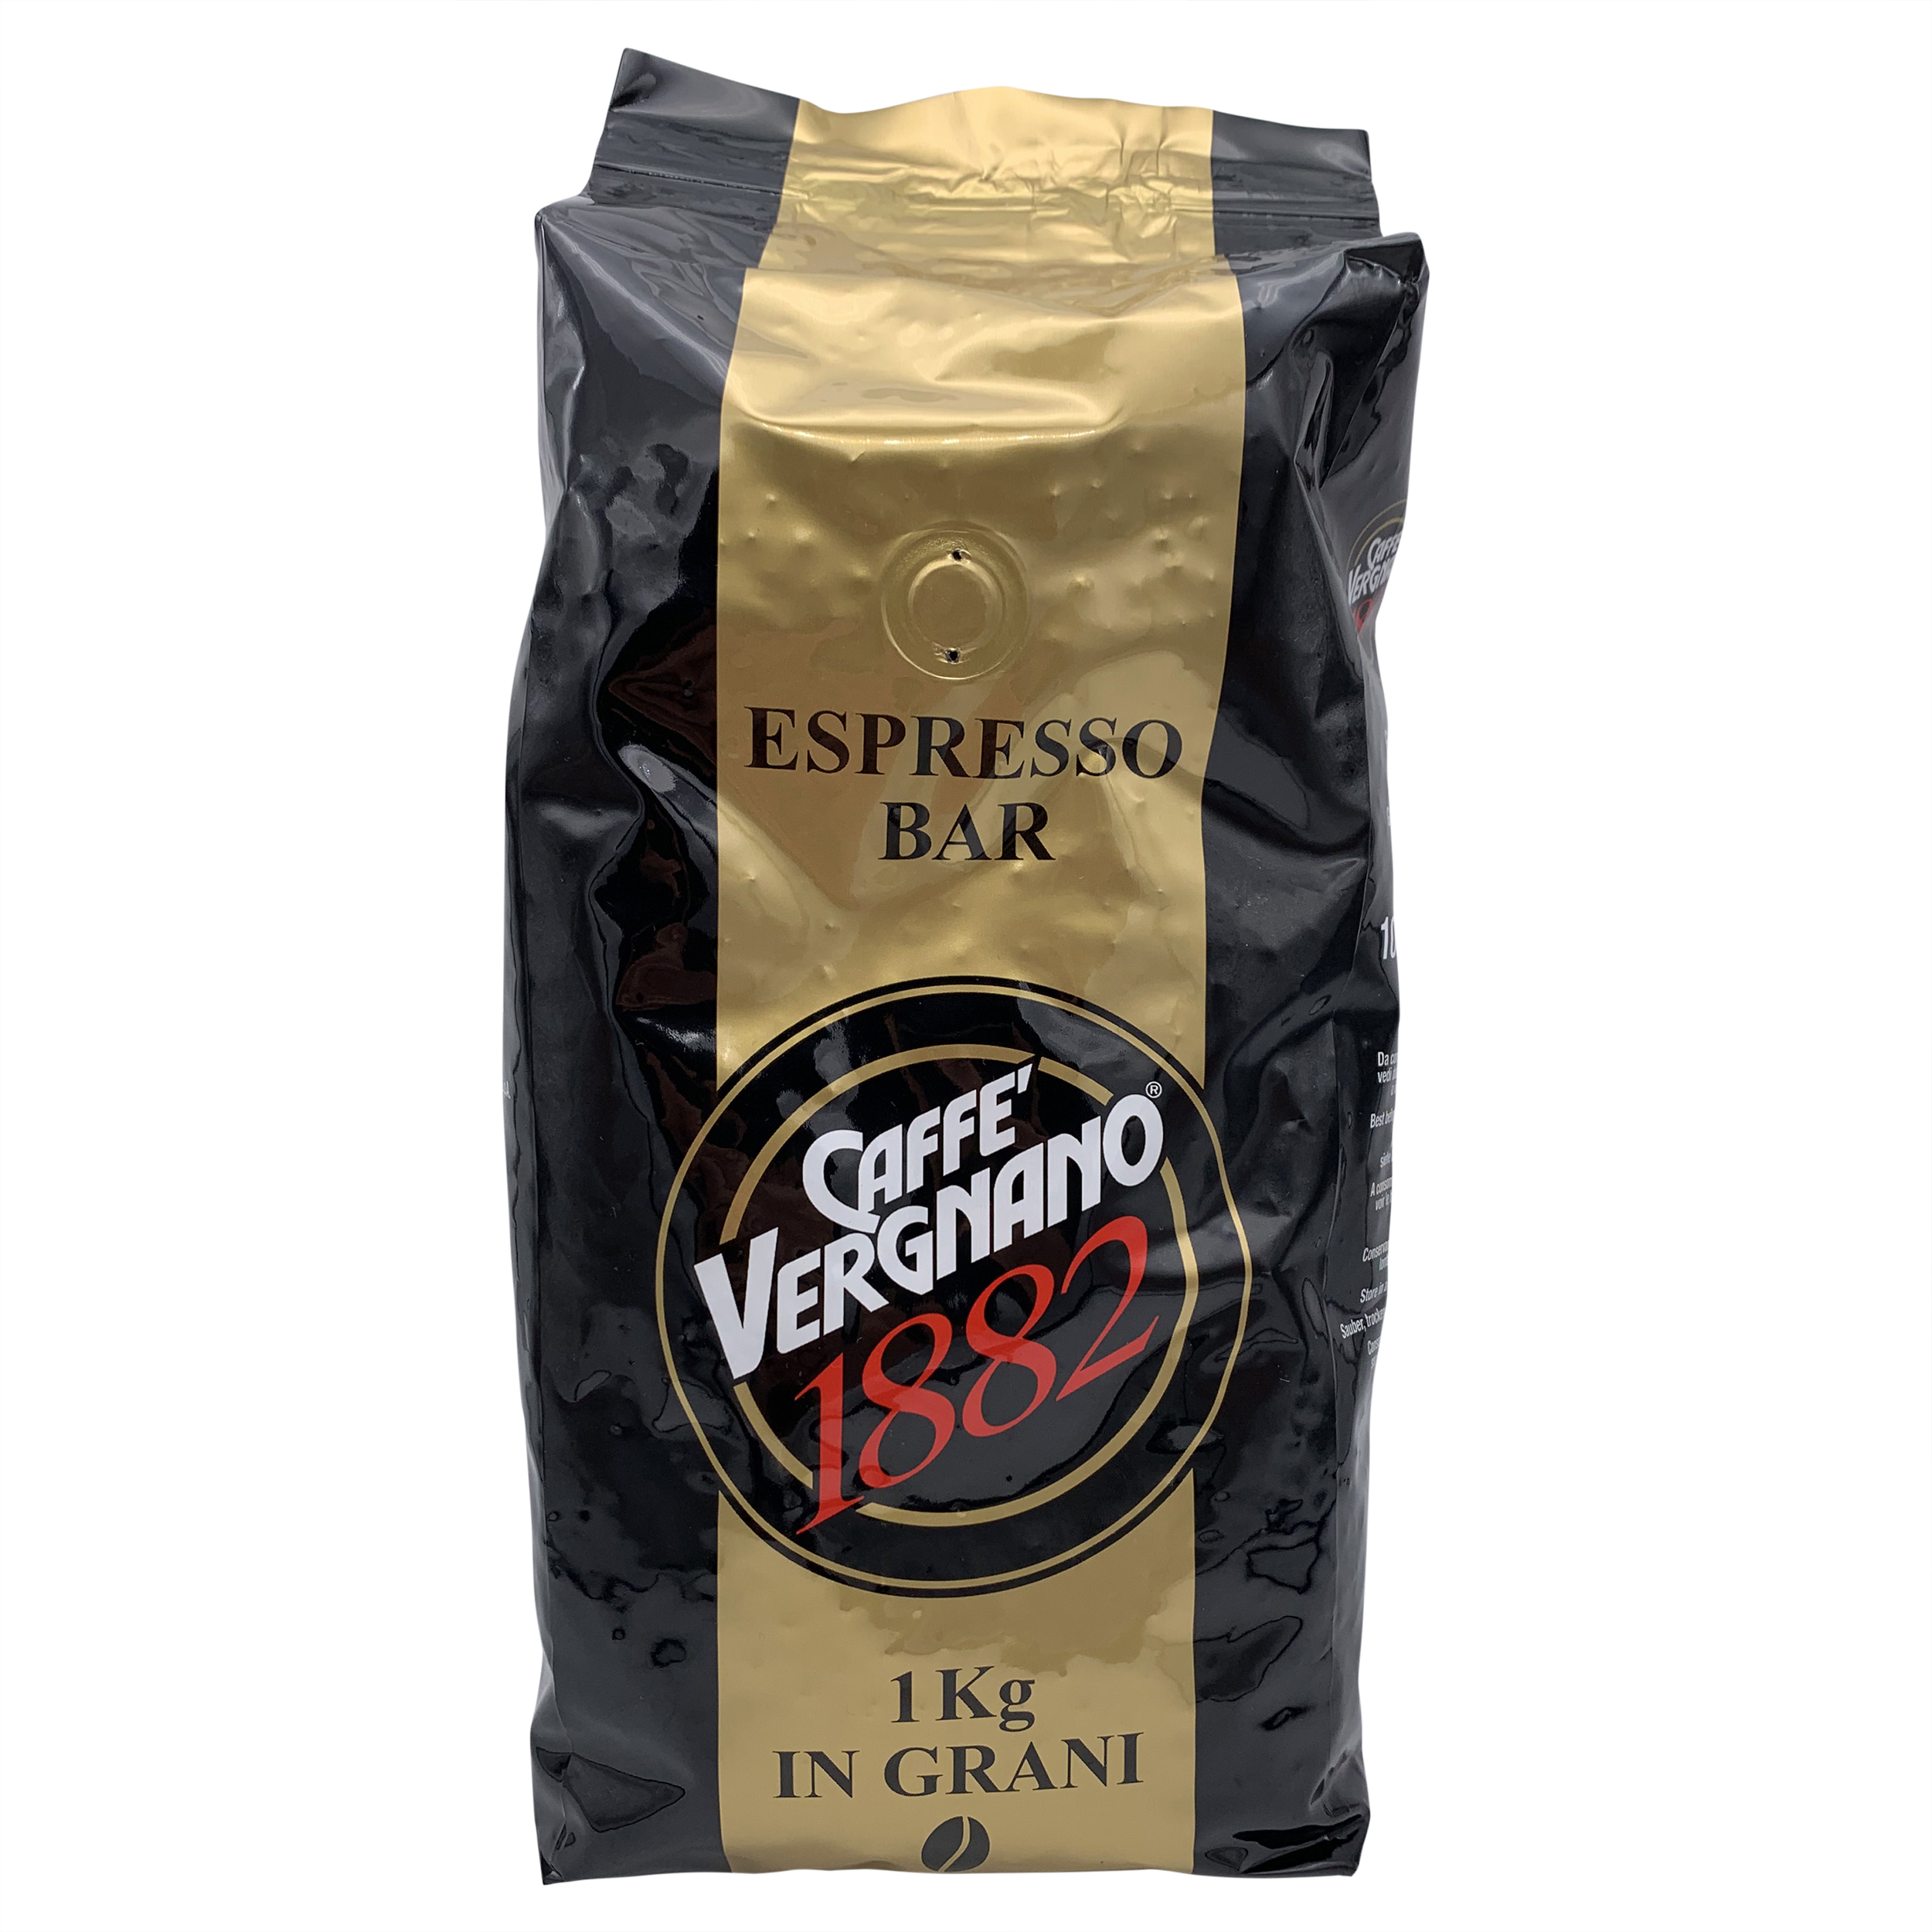 Grain coffee LAVAZZA Gran Aroma Bar, 1 kg - Delivery Worldwide